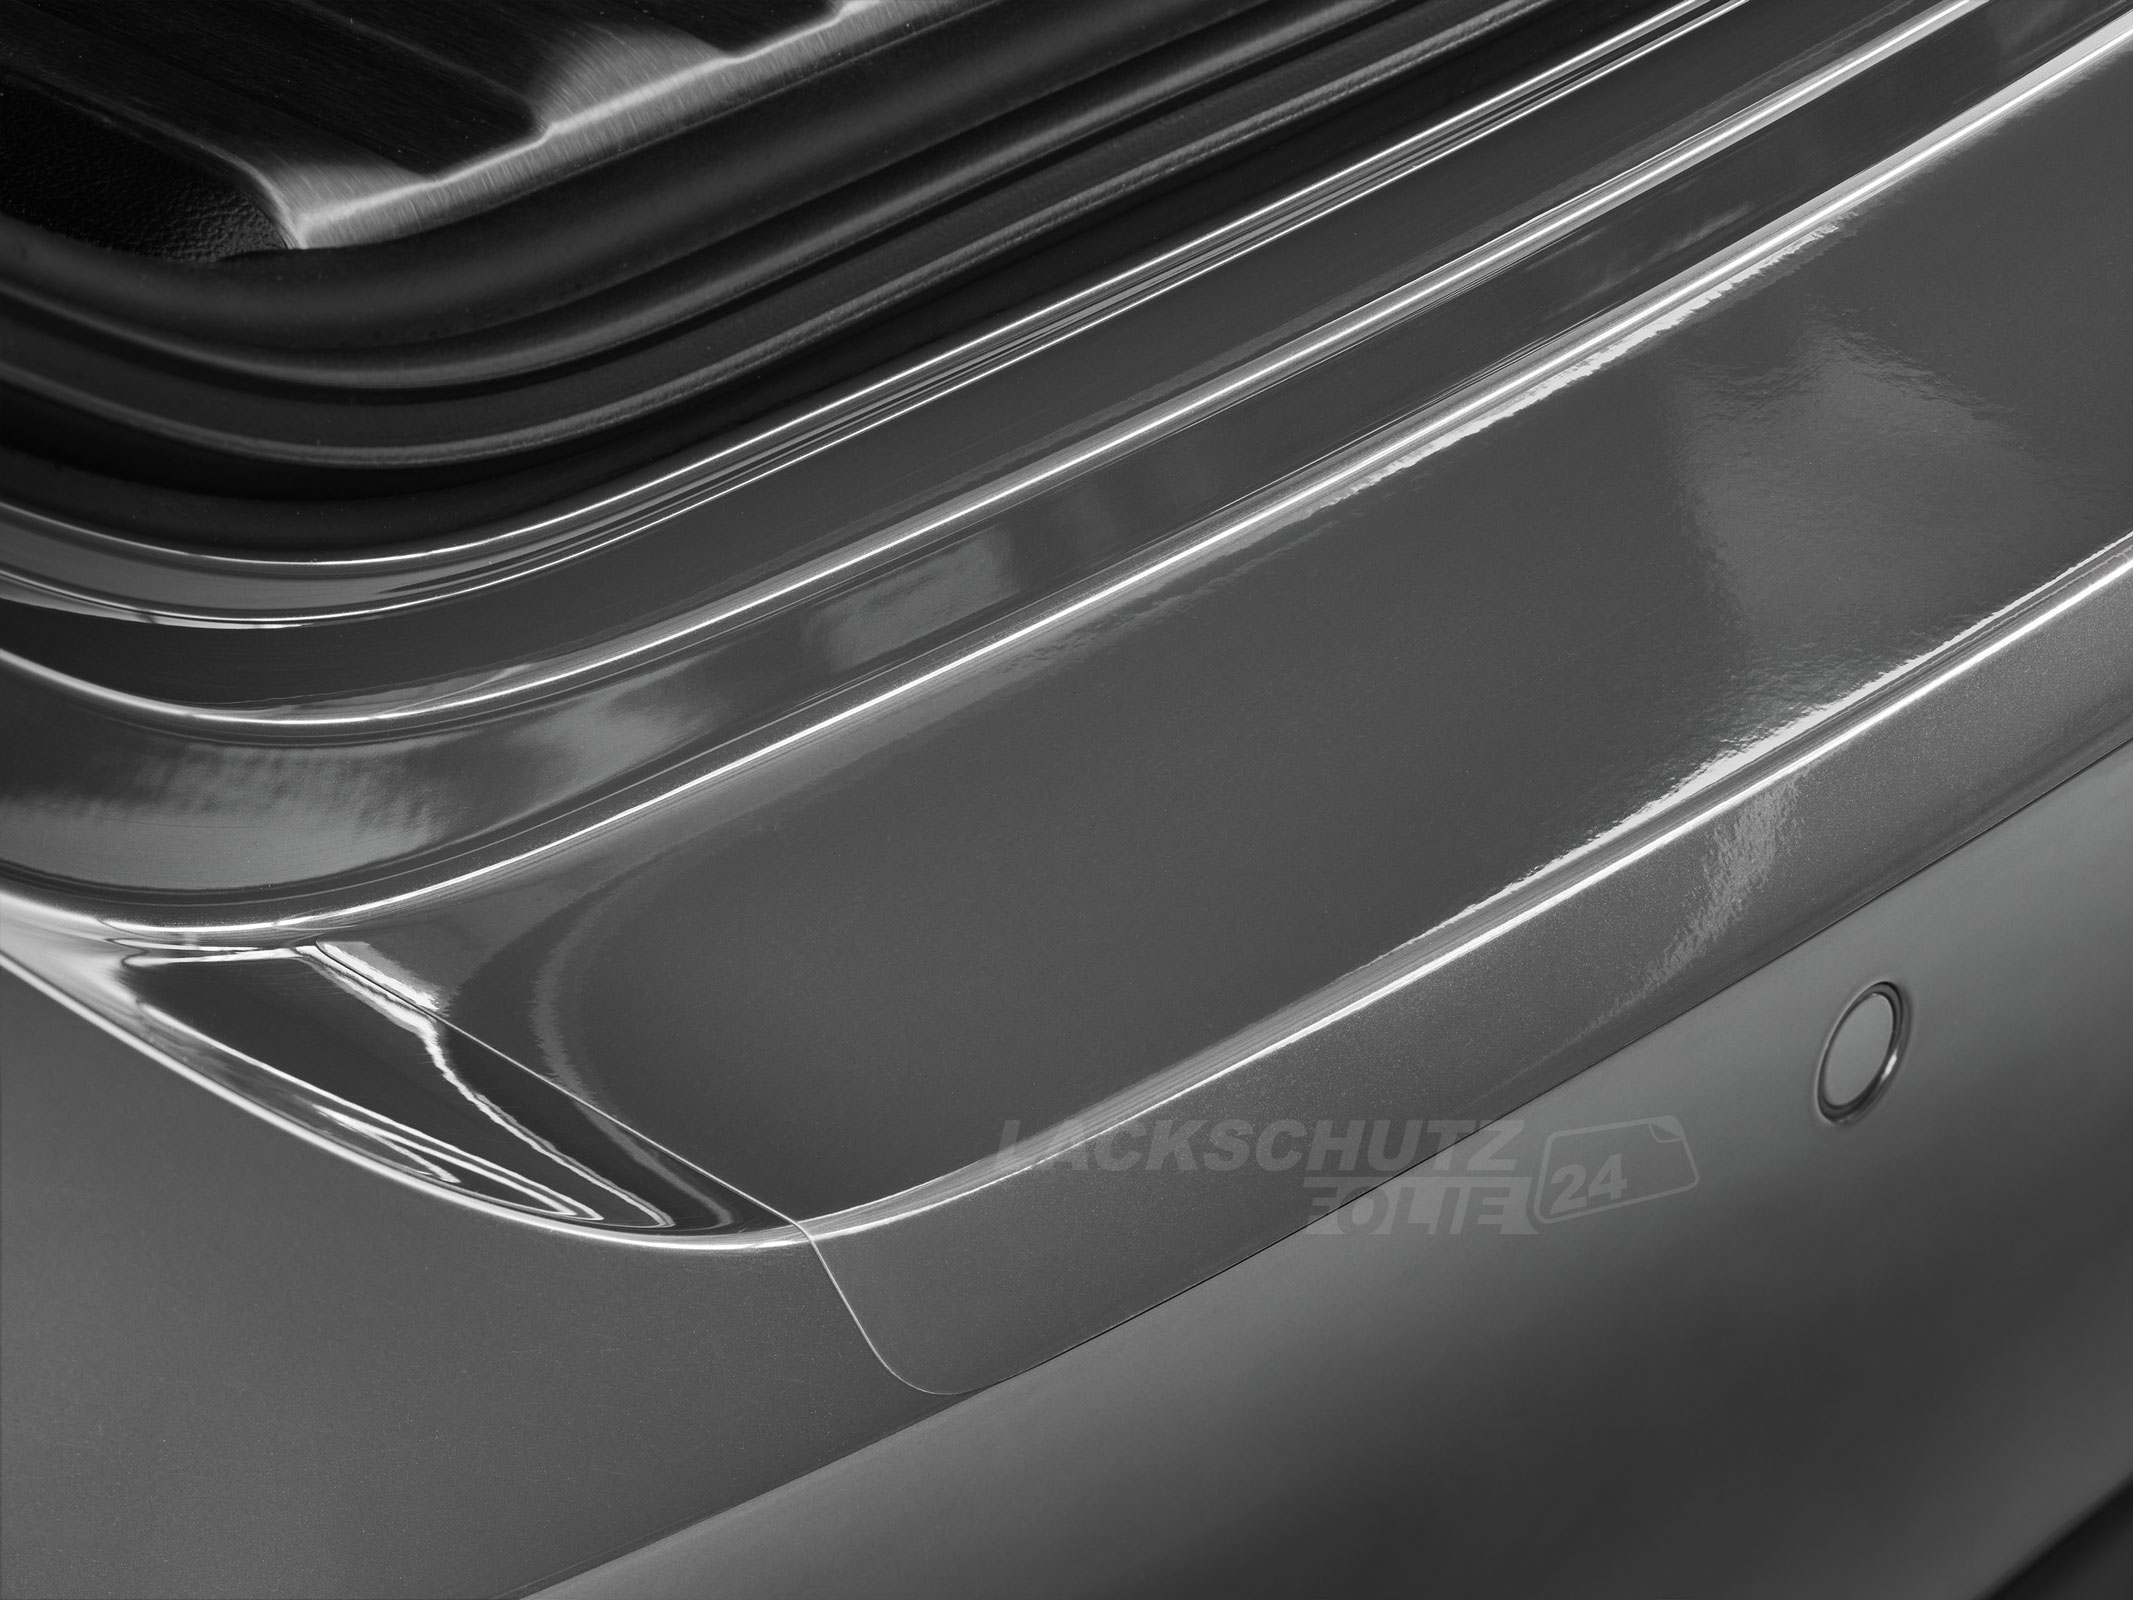 Ladekantenschutzfolie - Transparent Glatt Hochglänzend 240 µm stark für Lancia Phedra BJ 2002-2008